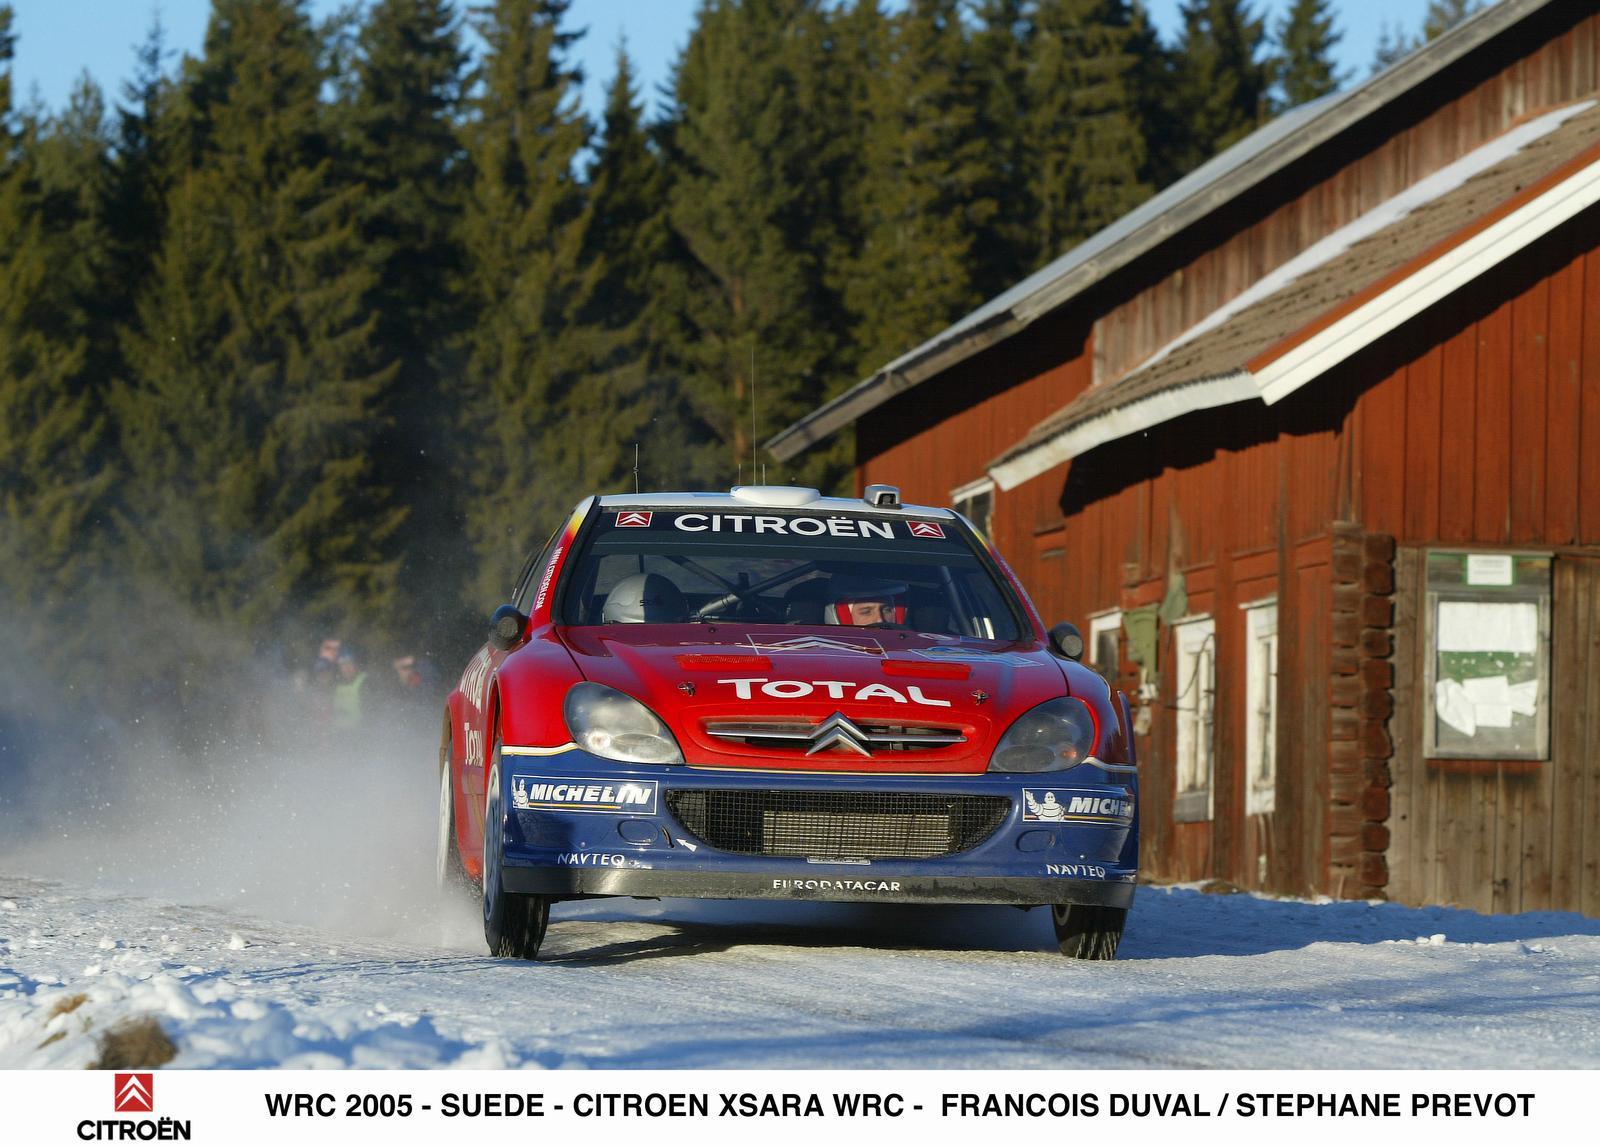 Xsara WRC 2005 in Sweden